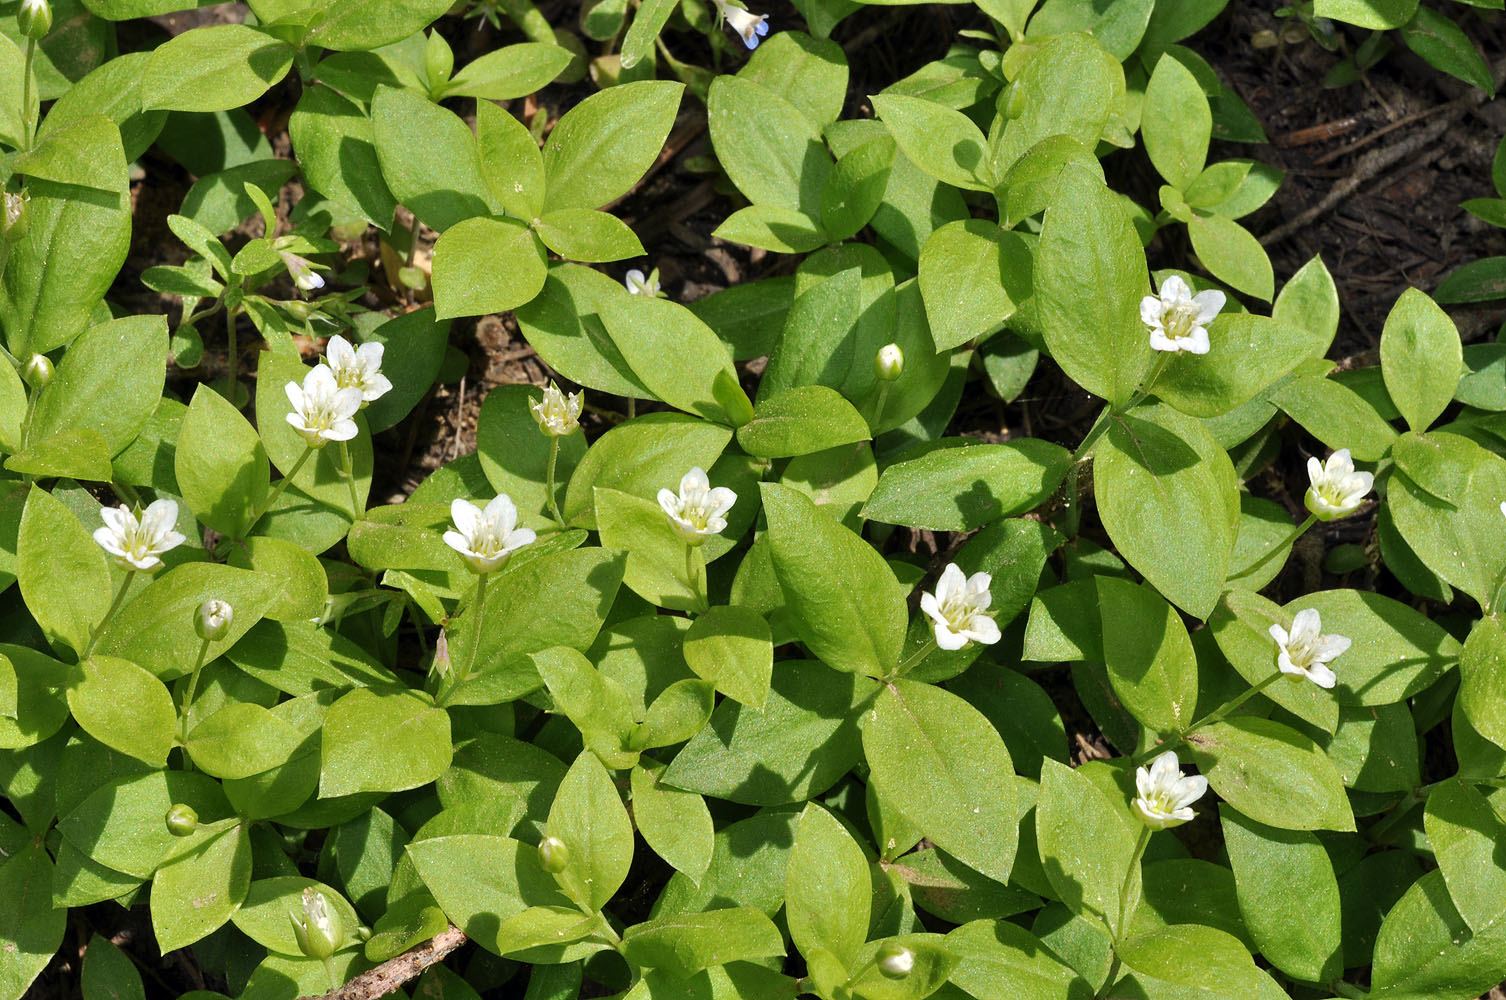 Flora of Eastern Washington Image: Moehringia macrophylla